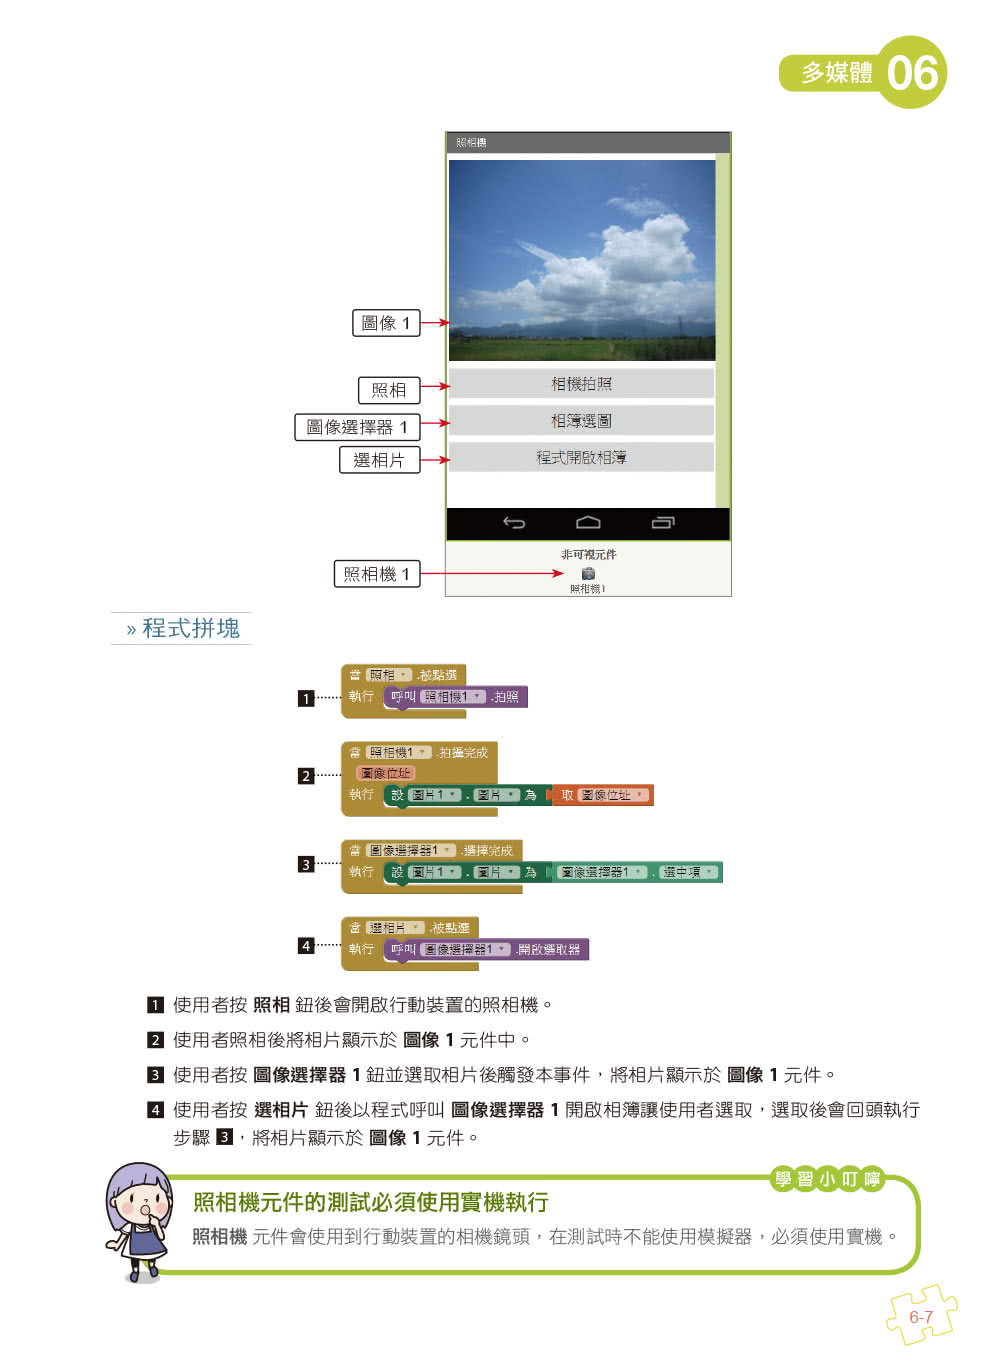 手機應用程式設計超簡單―App Inventor 2零基礎入門班（中文介面第四版）（附入門影音/範例）